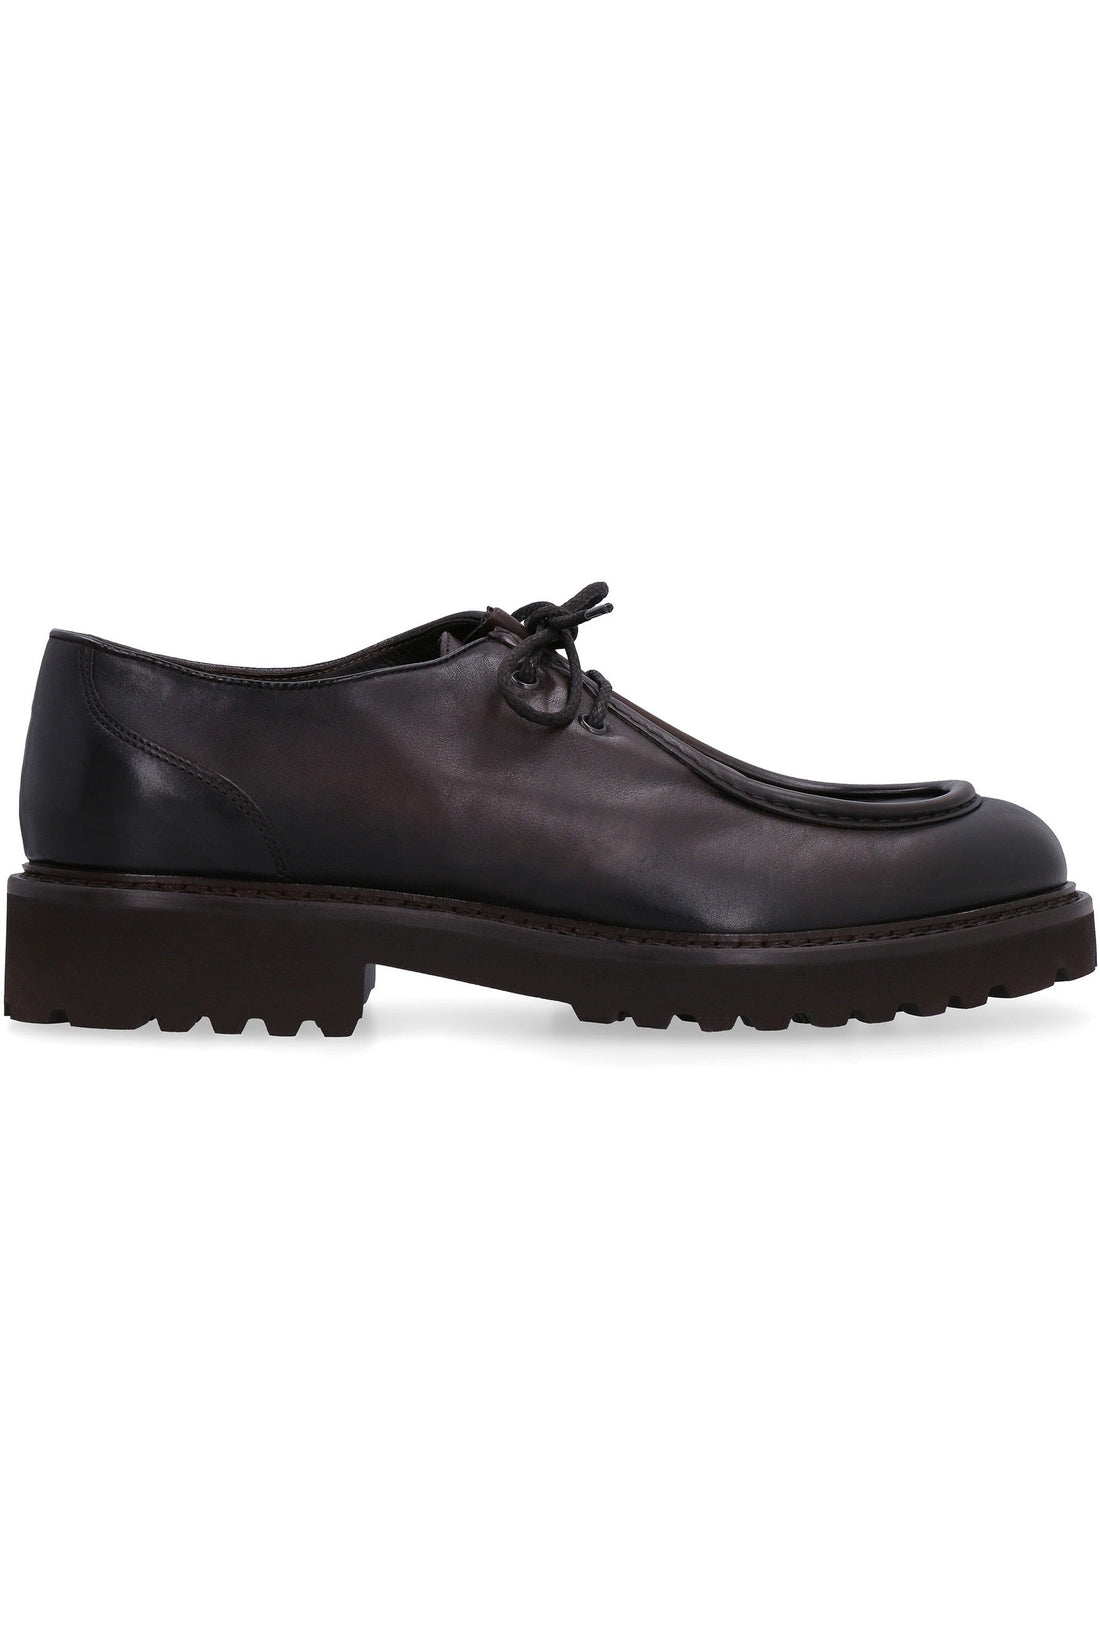 Doucal's-OUTLET-SALE-Leather lace-up shoes-ARCHIVIST